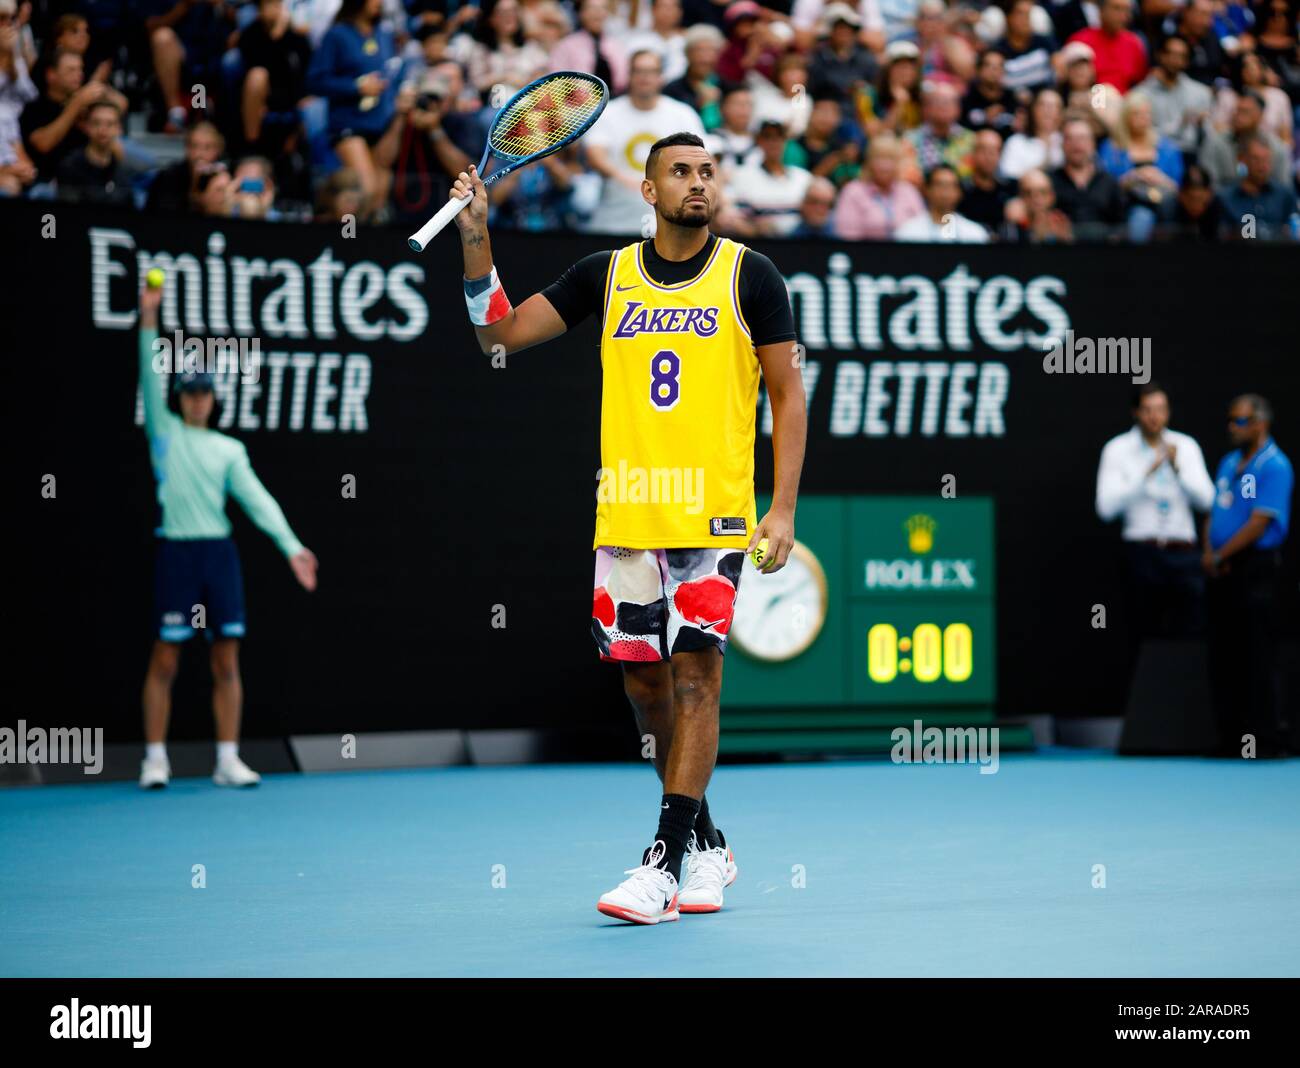 Nick KYRGIOS (AUS) porte un maillot Lakers pour commémorer le passage de Kobe Bryant lors d'une séance de préchauffage avant son match contre Rafael Nadal. Banque D'Images